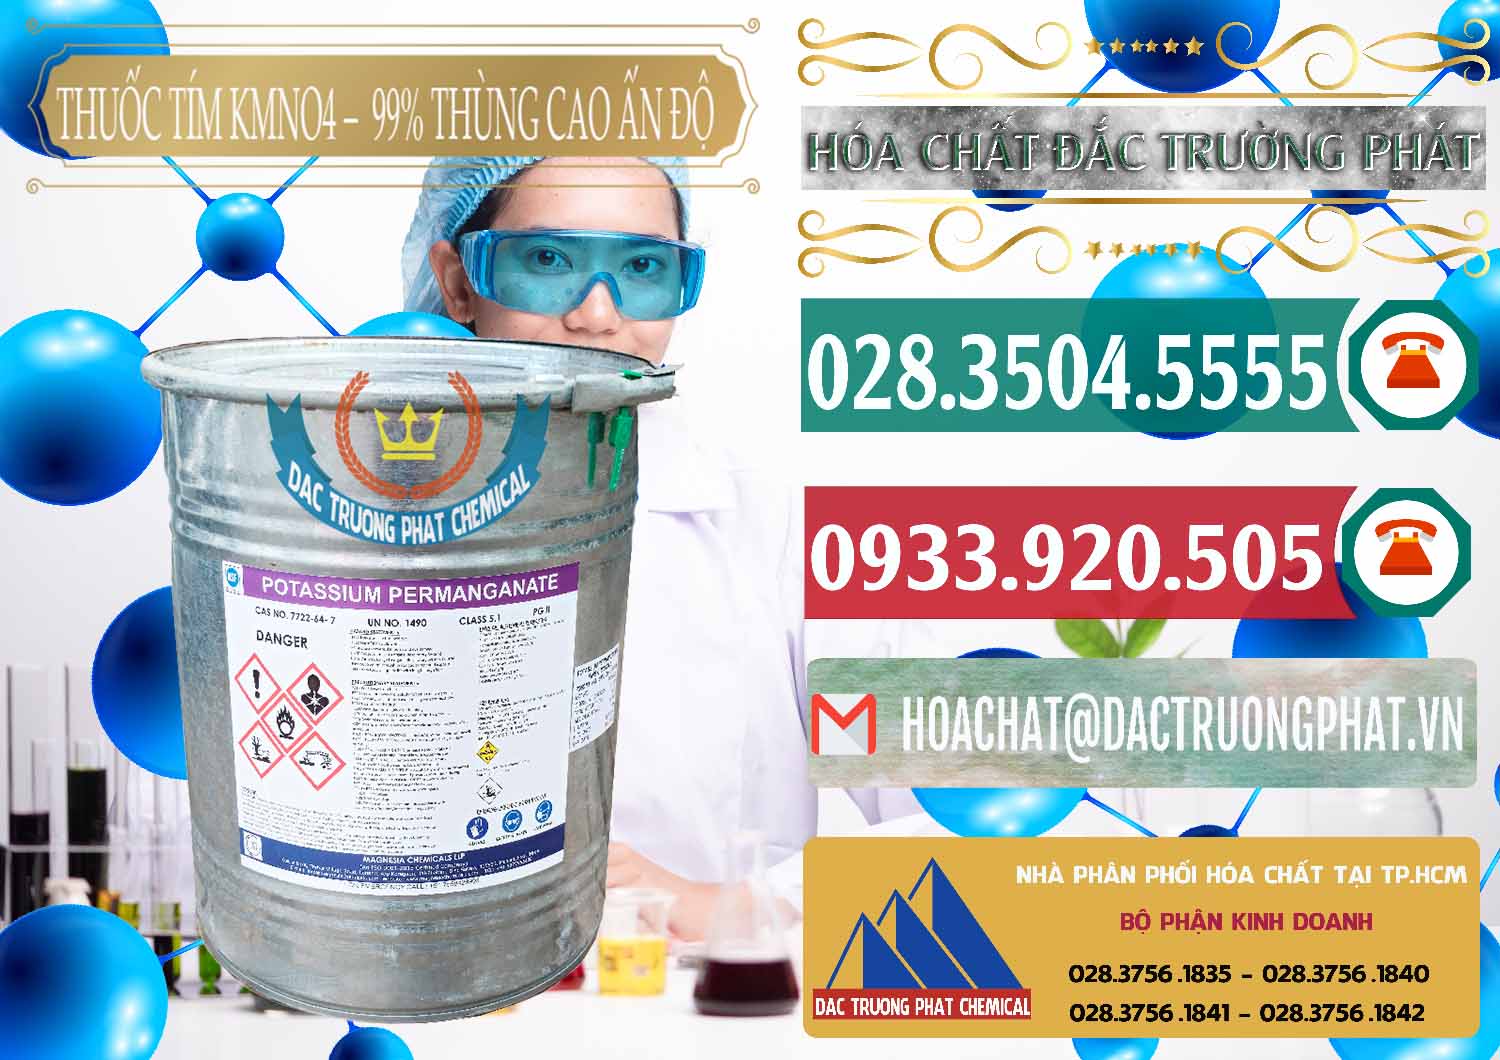 Chuyên kinh doanh & bán Thuốc Tím - KMNO4 Thùng Cao 99% Magnesia Chemicals Ấn Độ India - 0164 - Công ty nhập khẩu _ cung cấp hóa chất tại TP.HCM - muabanhoachat.vn